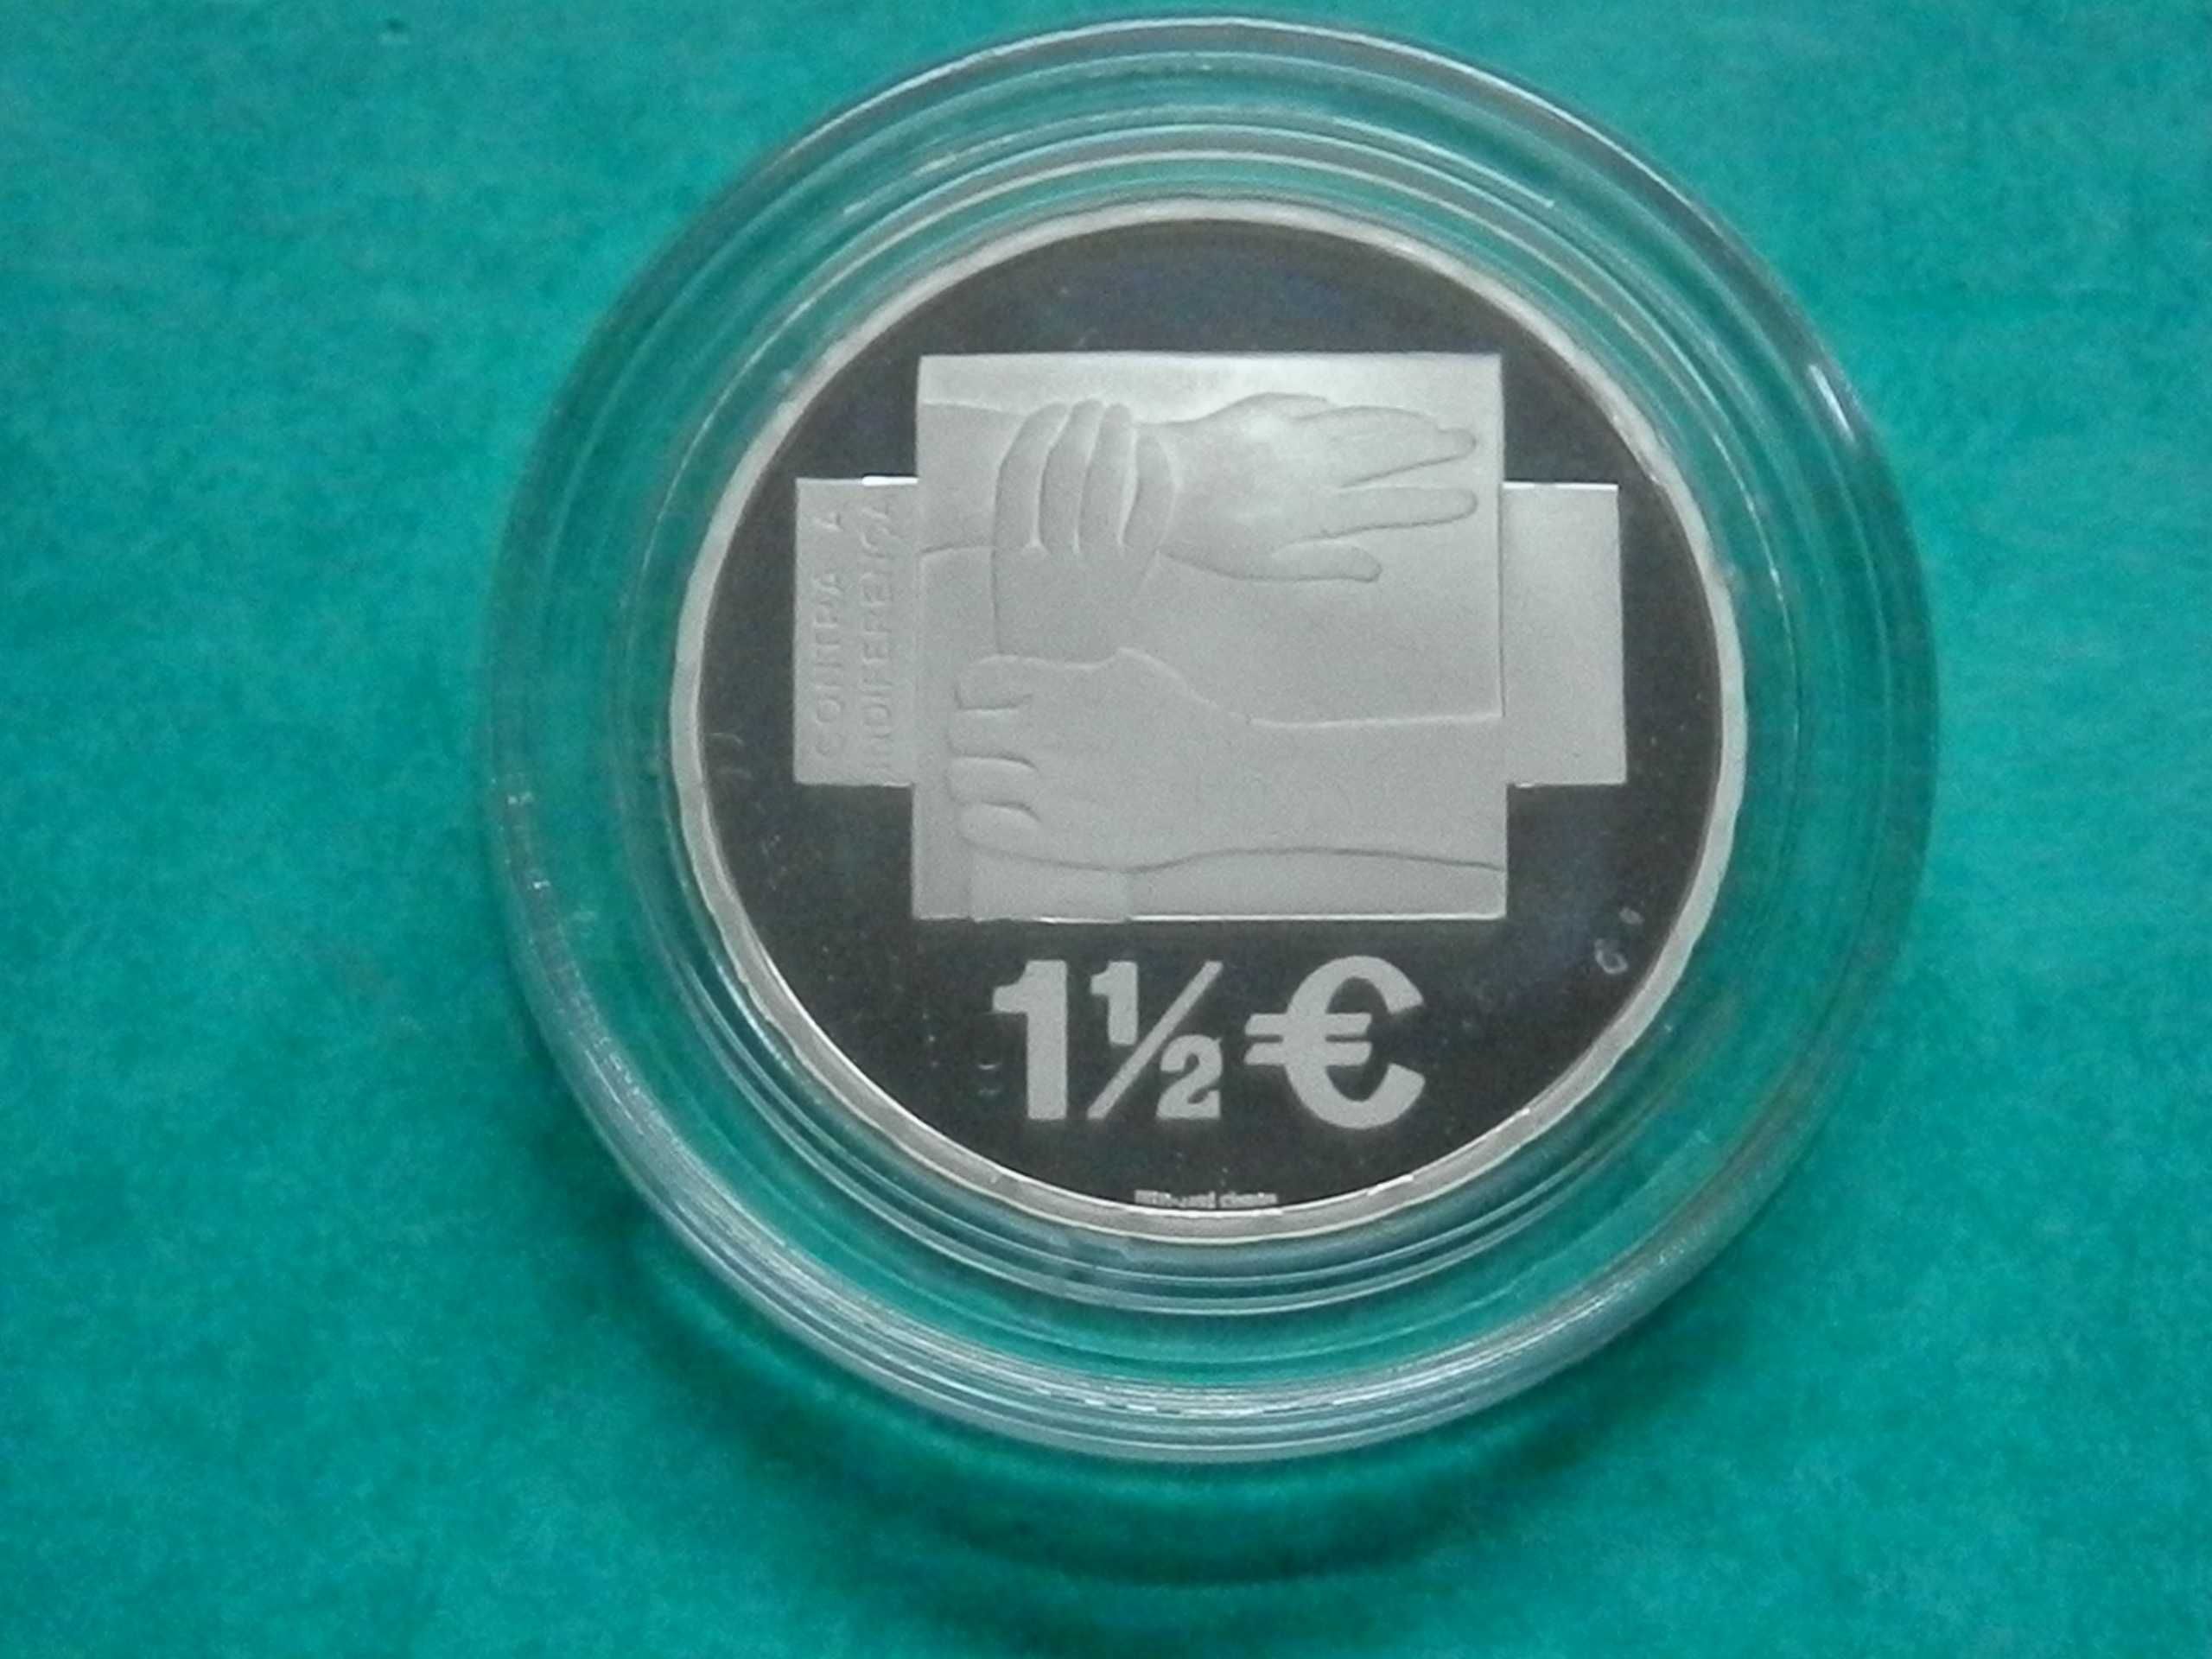 836 - Euro: 1,50 euros AMI 2008 Proof, por 52,00